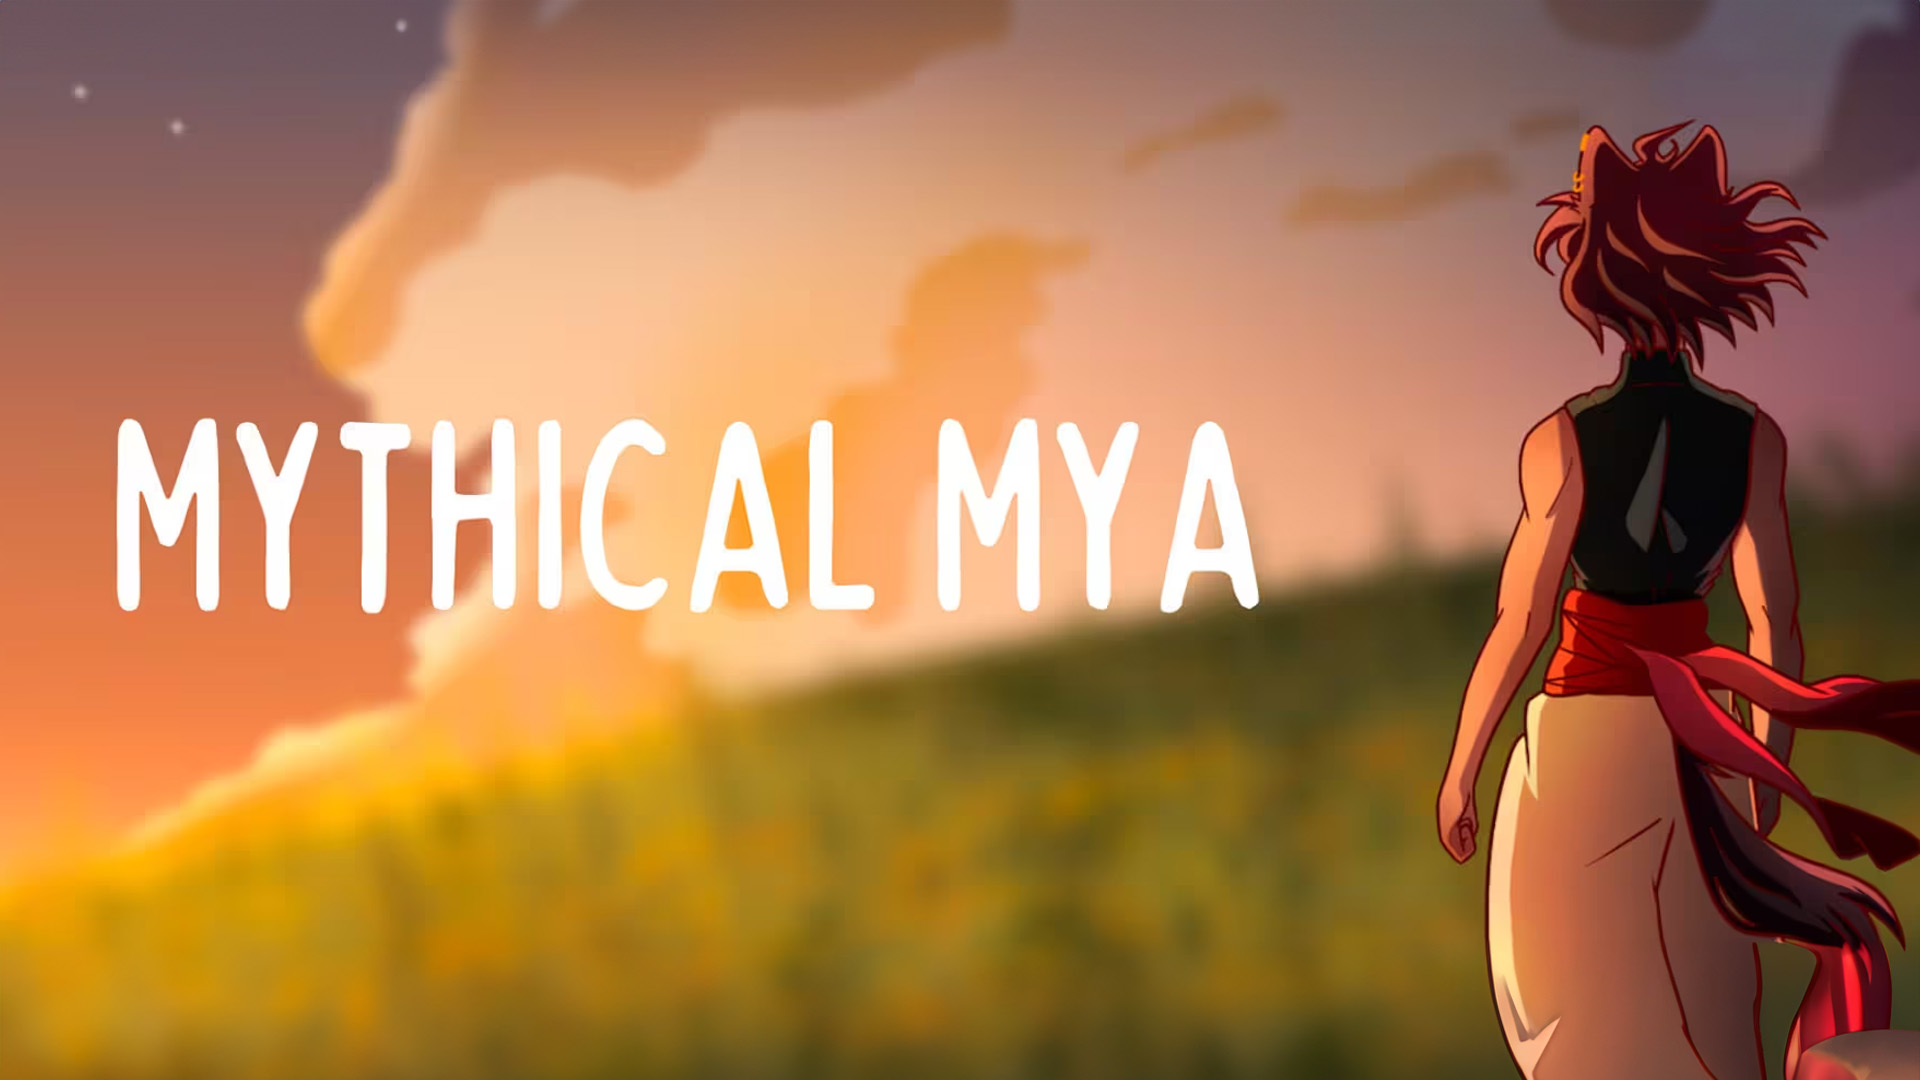 Mythical Mya